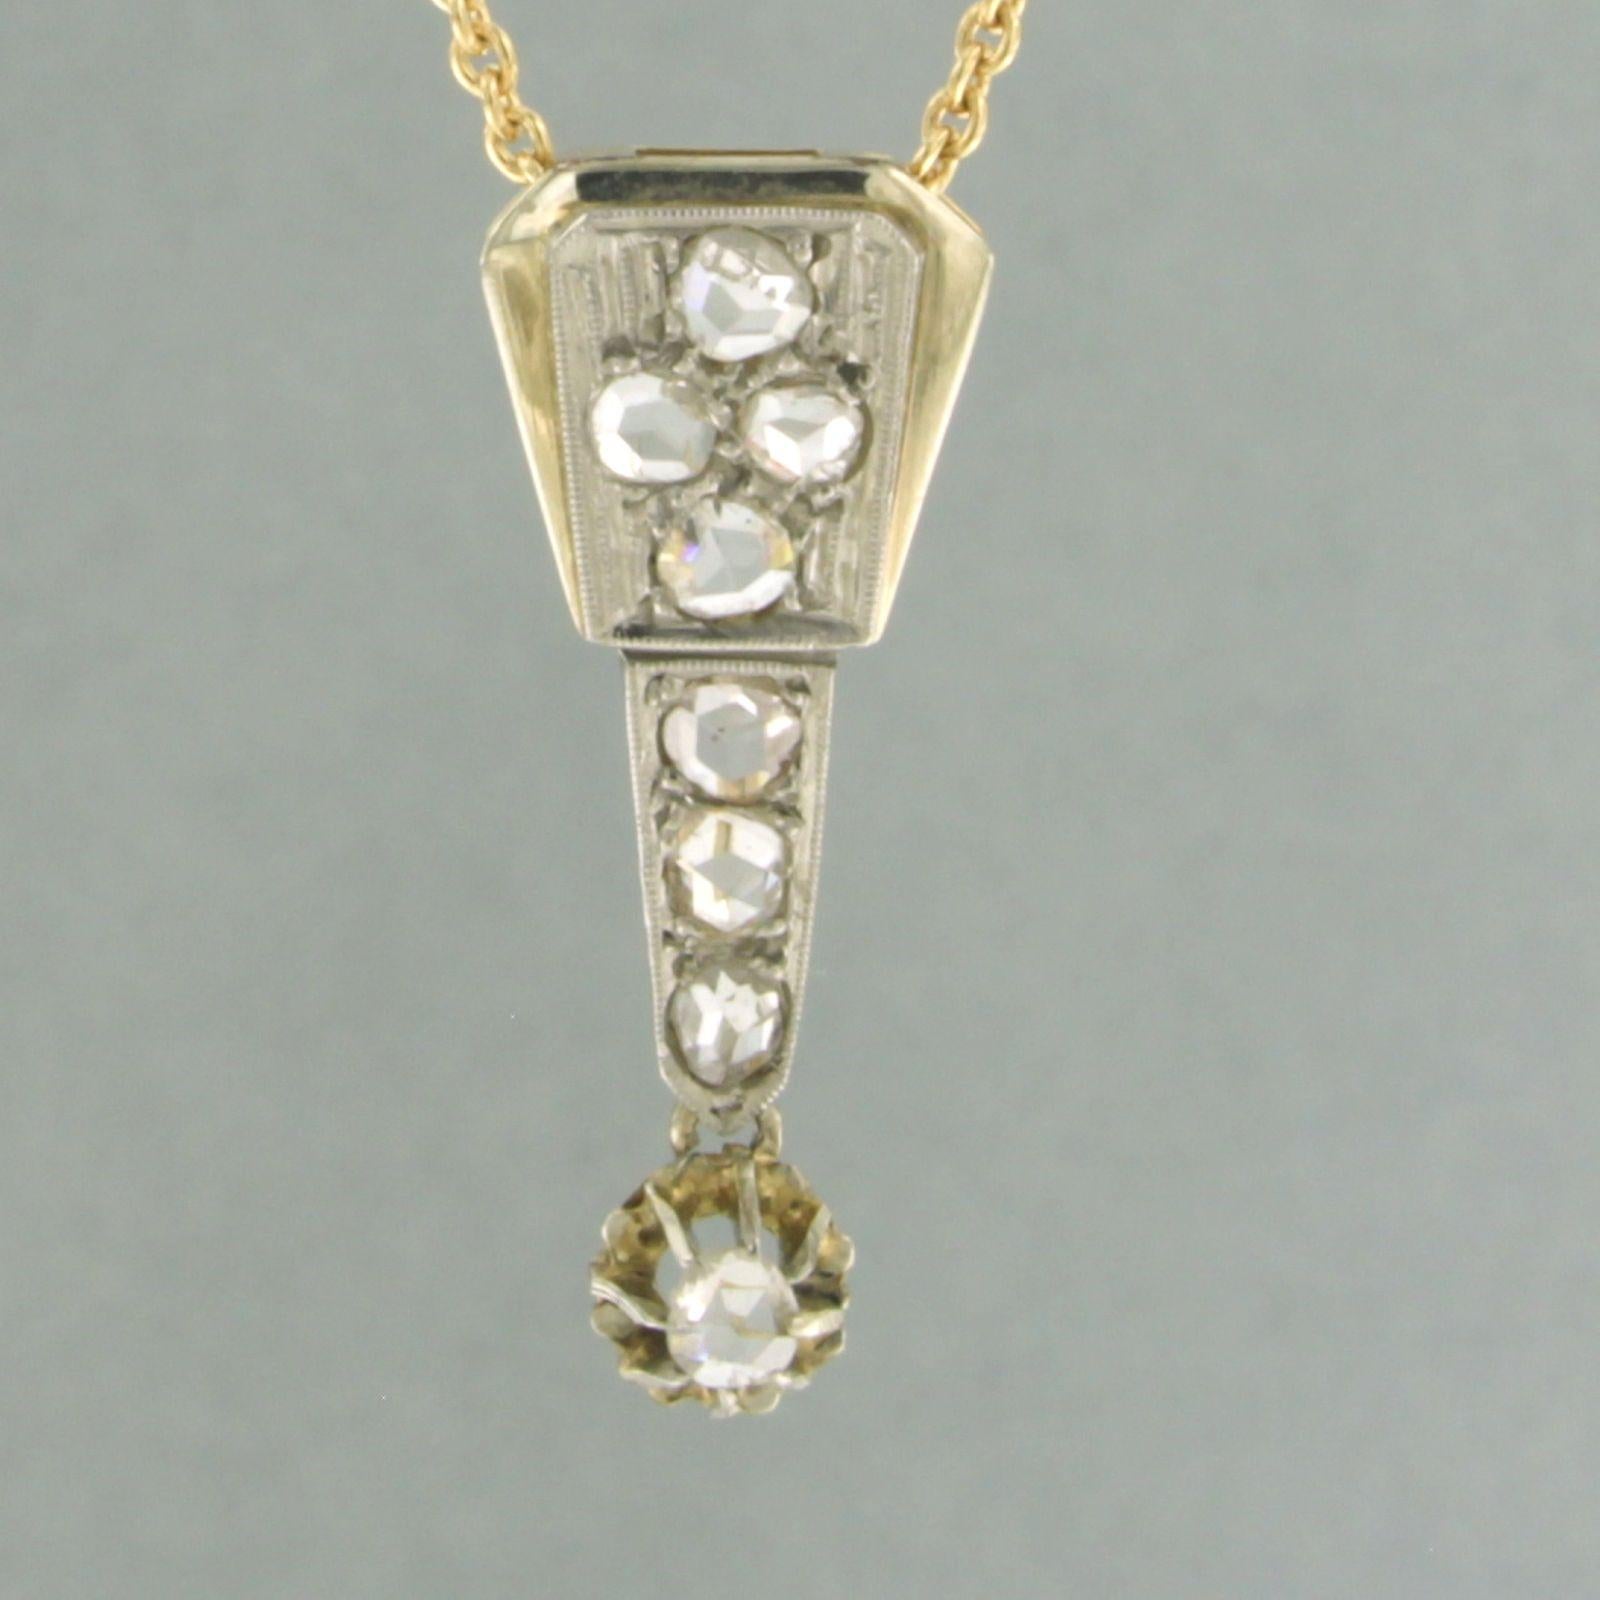 Collier en or jaune 18k avec pendentif en or 18k et platine 950pt serti d'un diamant taille rose, total environ 0,20 ct - F/G - SI - 45 cm

description détaillée

la longueur du collier est de 45 cm de long par 0,7 mm de large

le pendentif mesure